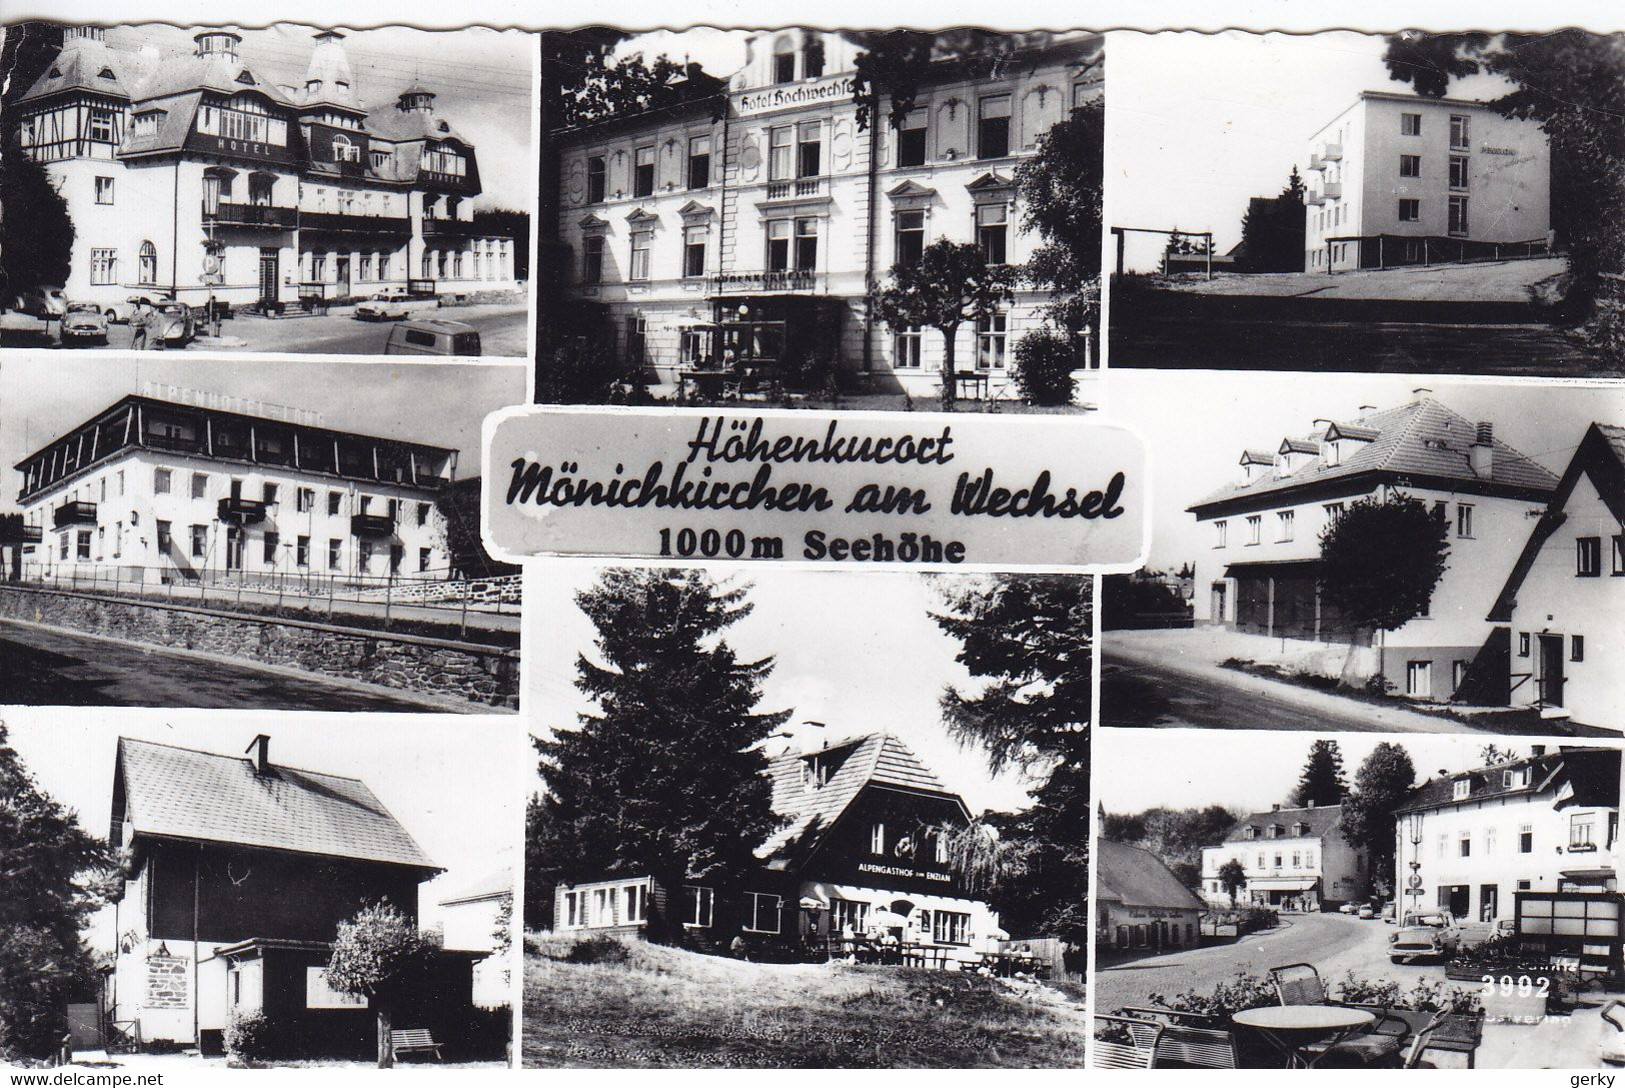 Mönichkirchen - Wechsel